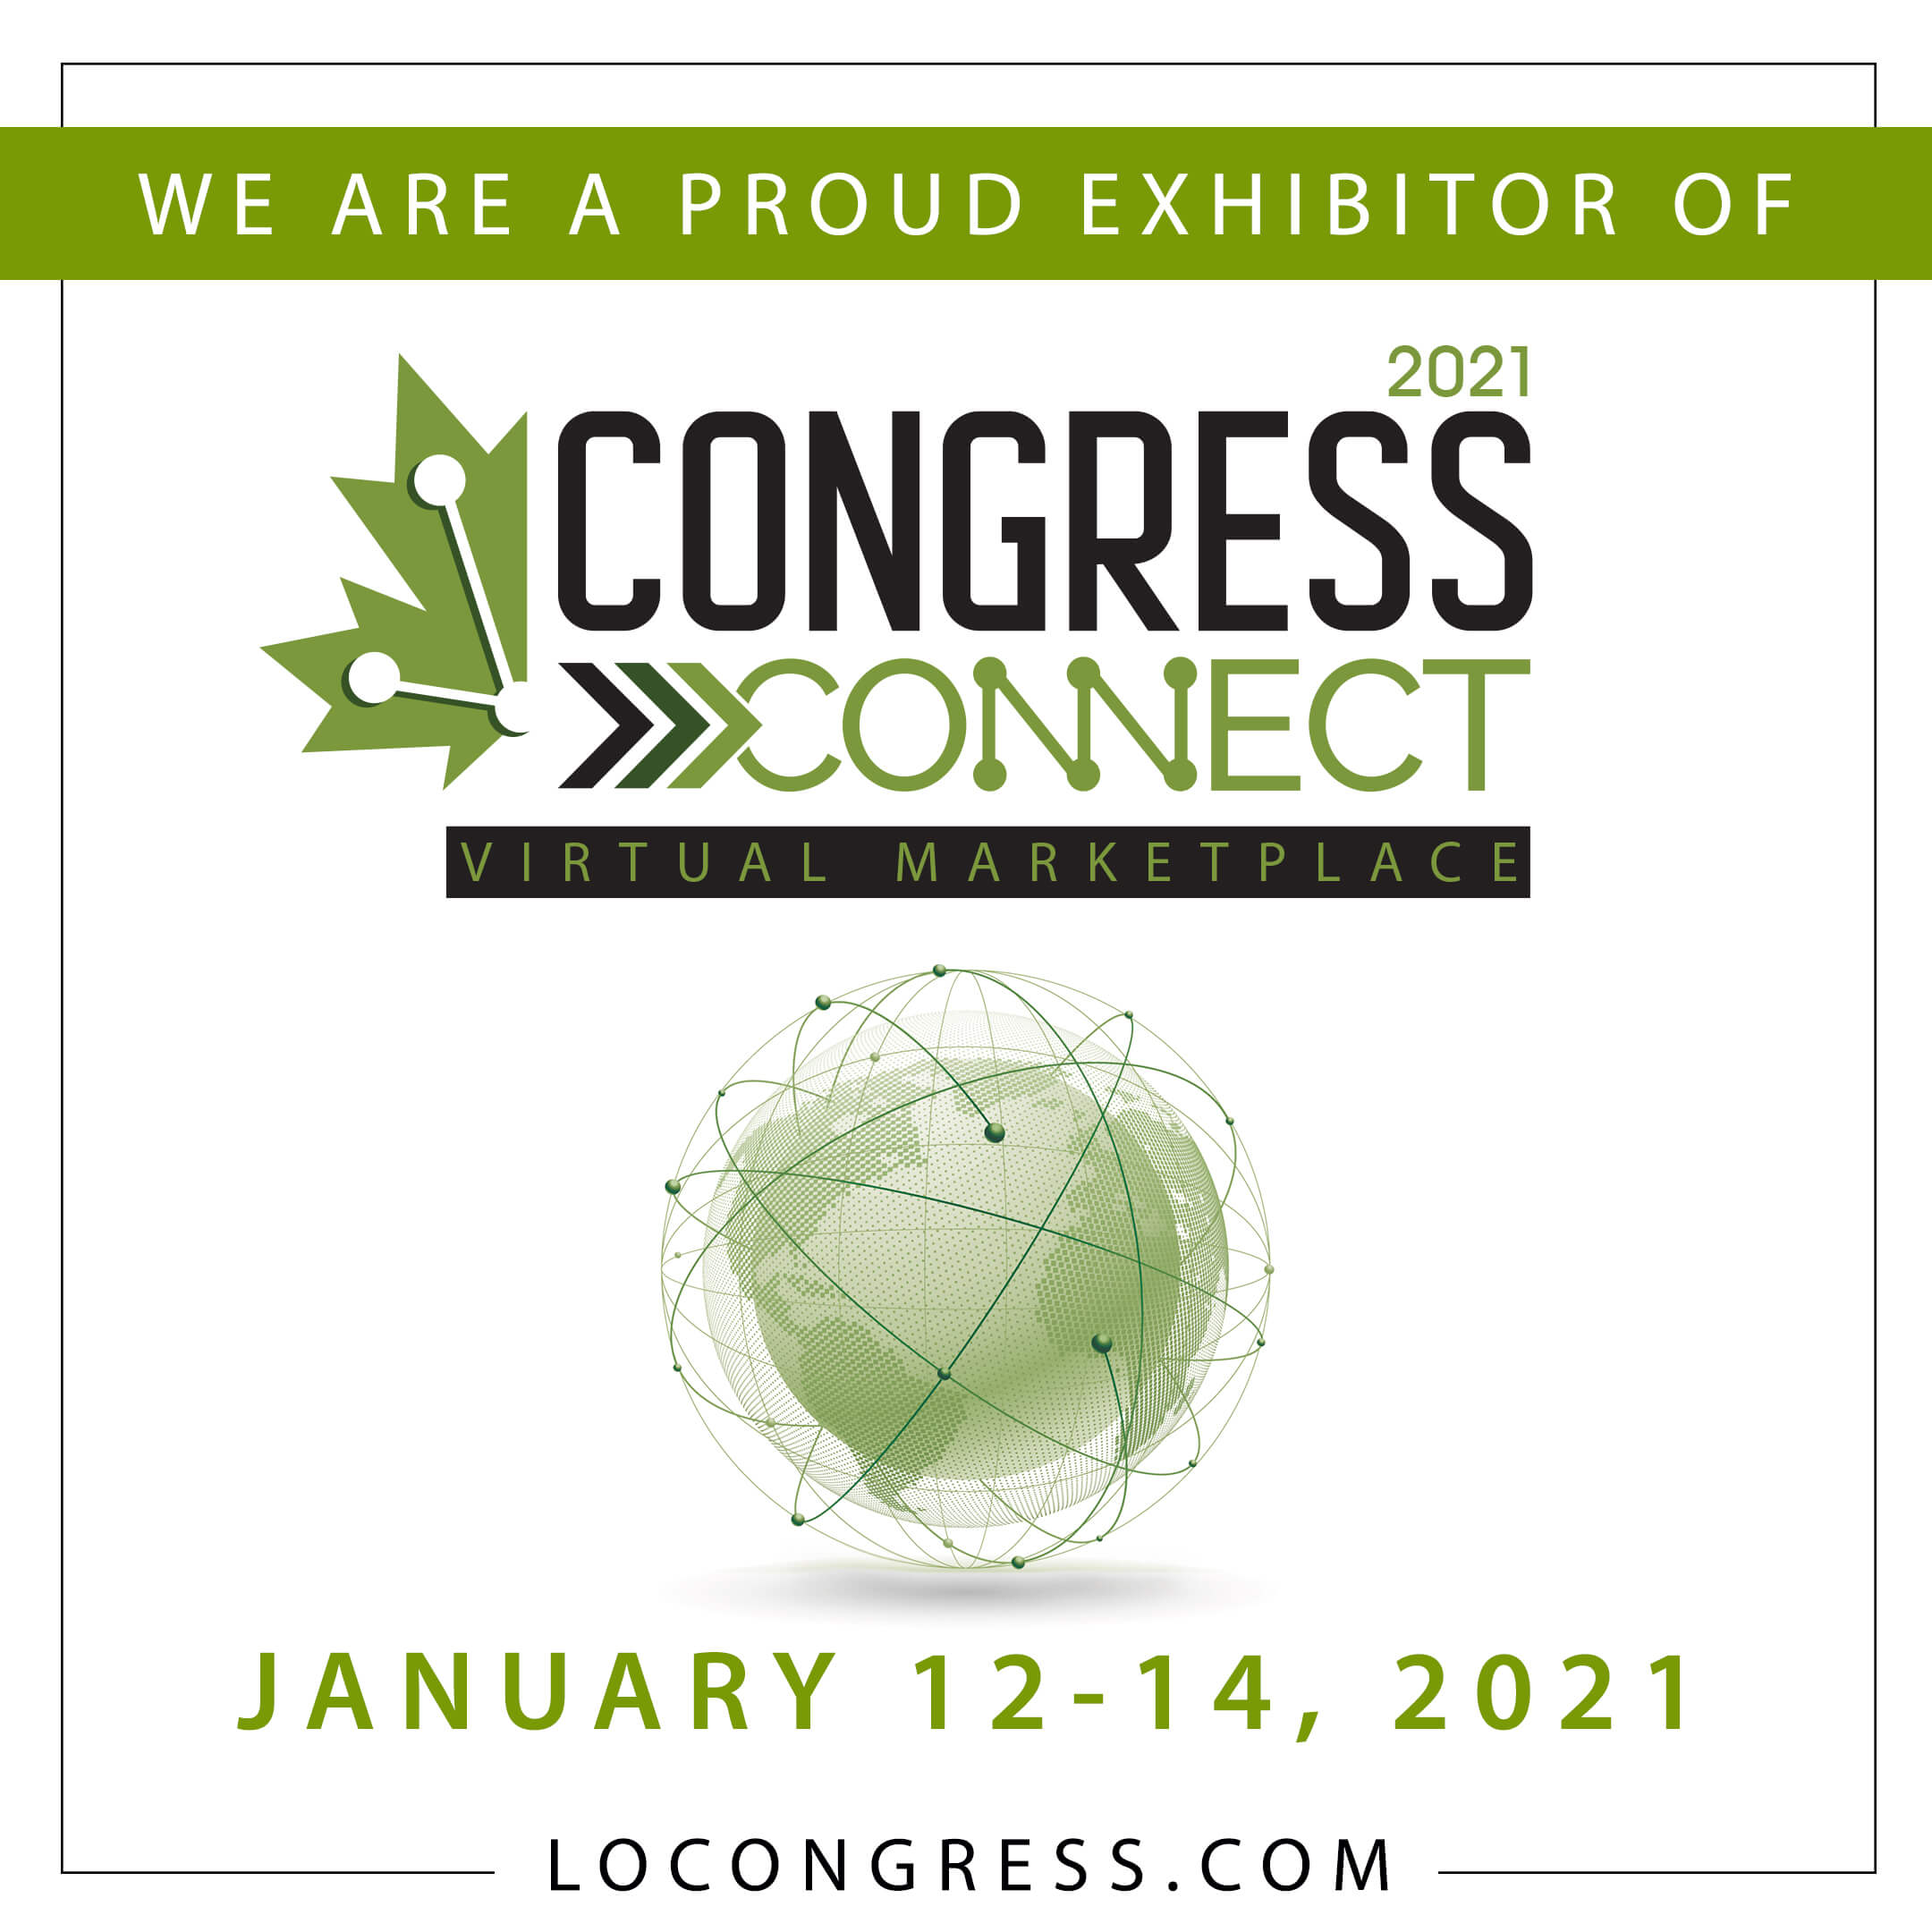 Congress Connect - Exhibitor Social Media